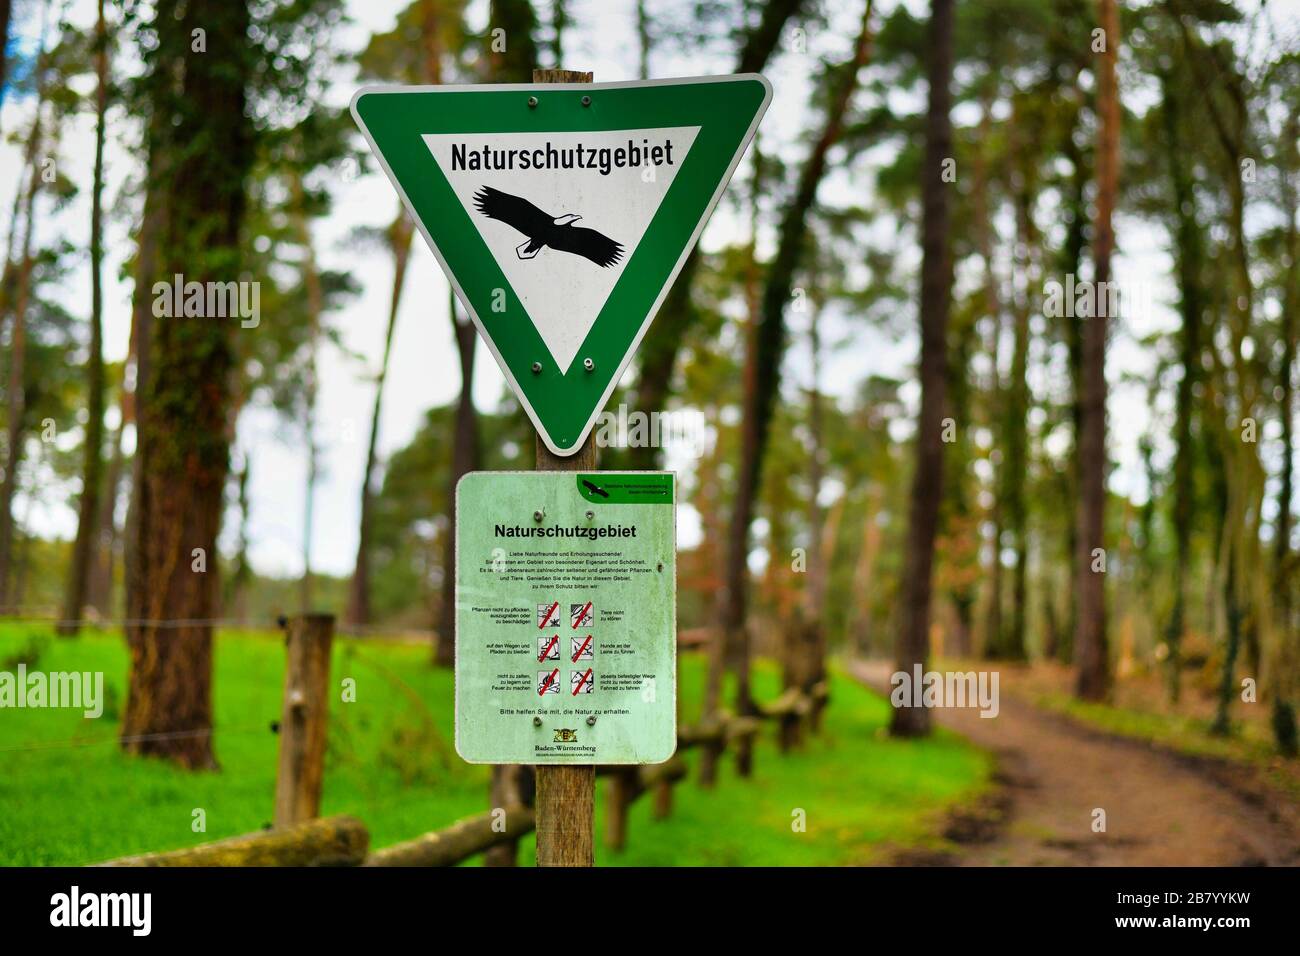 Signe vert triangulaire avec aigle et signe avec des règles de comportement pour la réserve naturelle allemande, une catégorie d'espace protégé dans le Fender allemand Banque D'Images